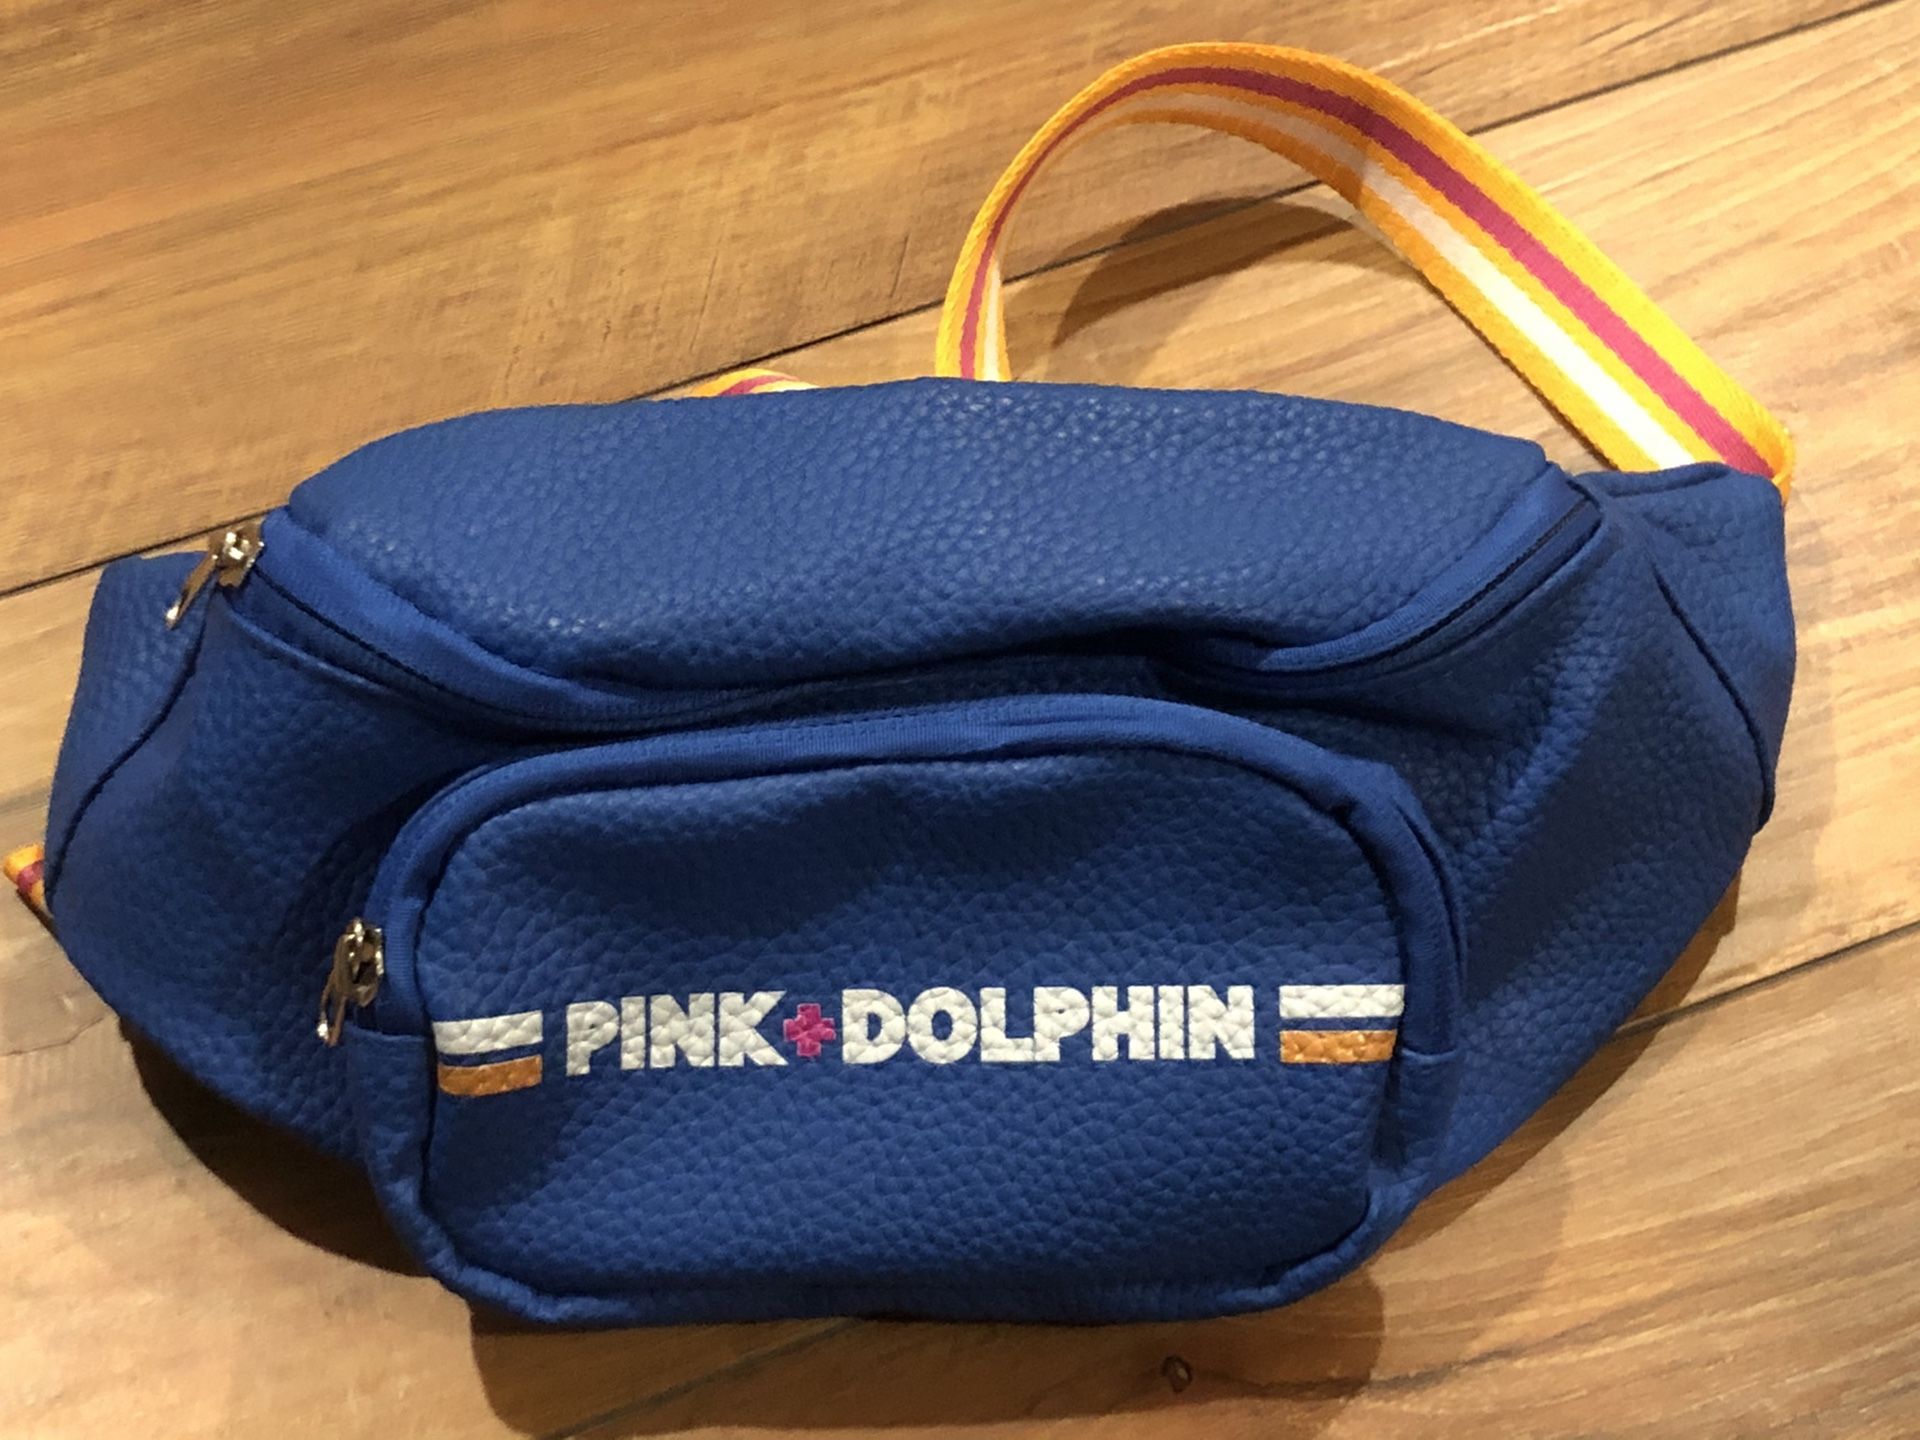 Pink Dolphin waist bag